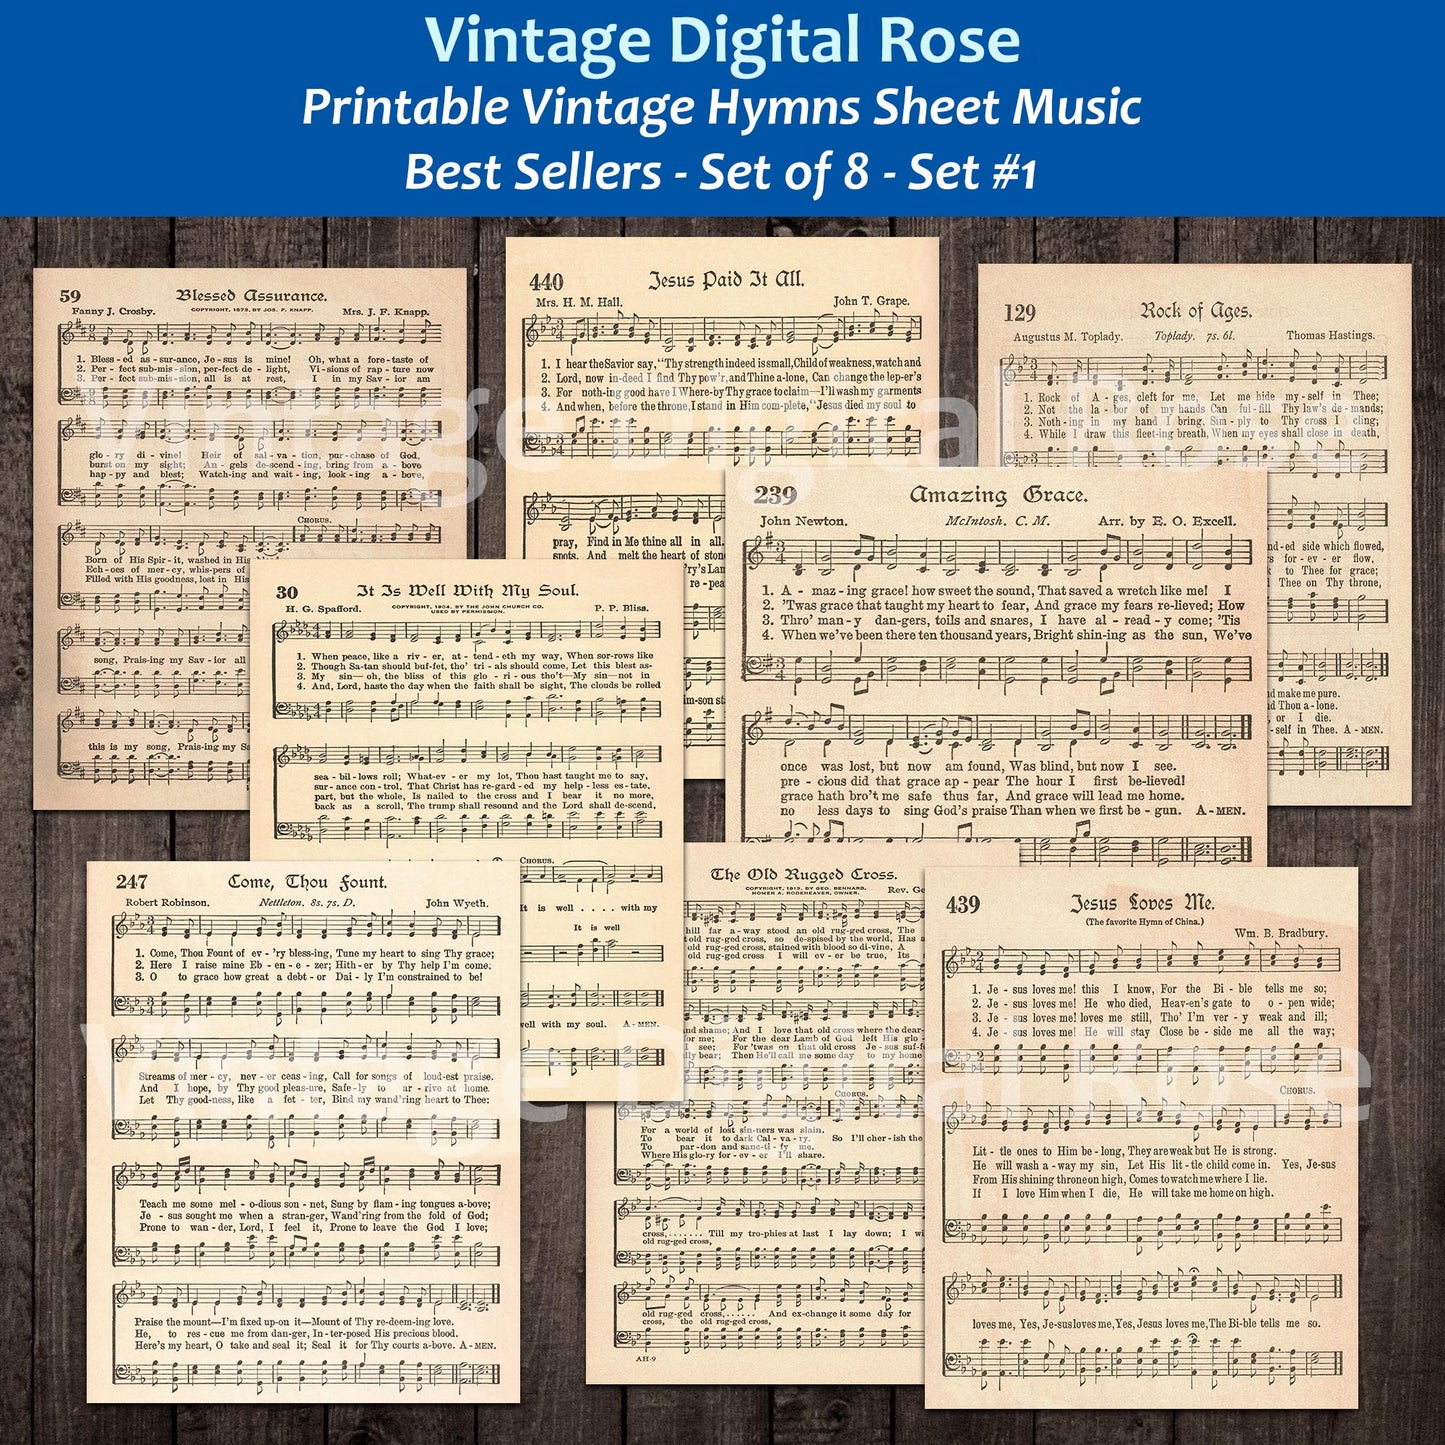 Printable Vintage Hymns Set of 8 Sheet Music Best Sellers Top Songs - Set #1